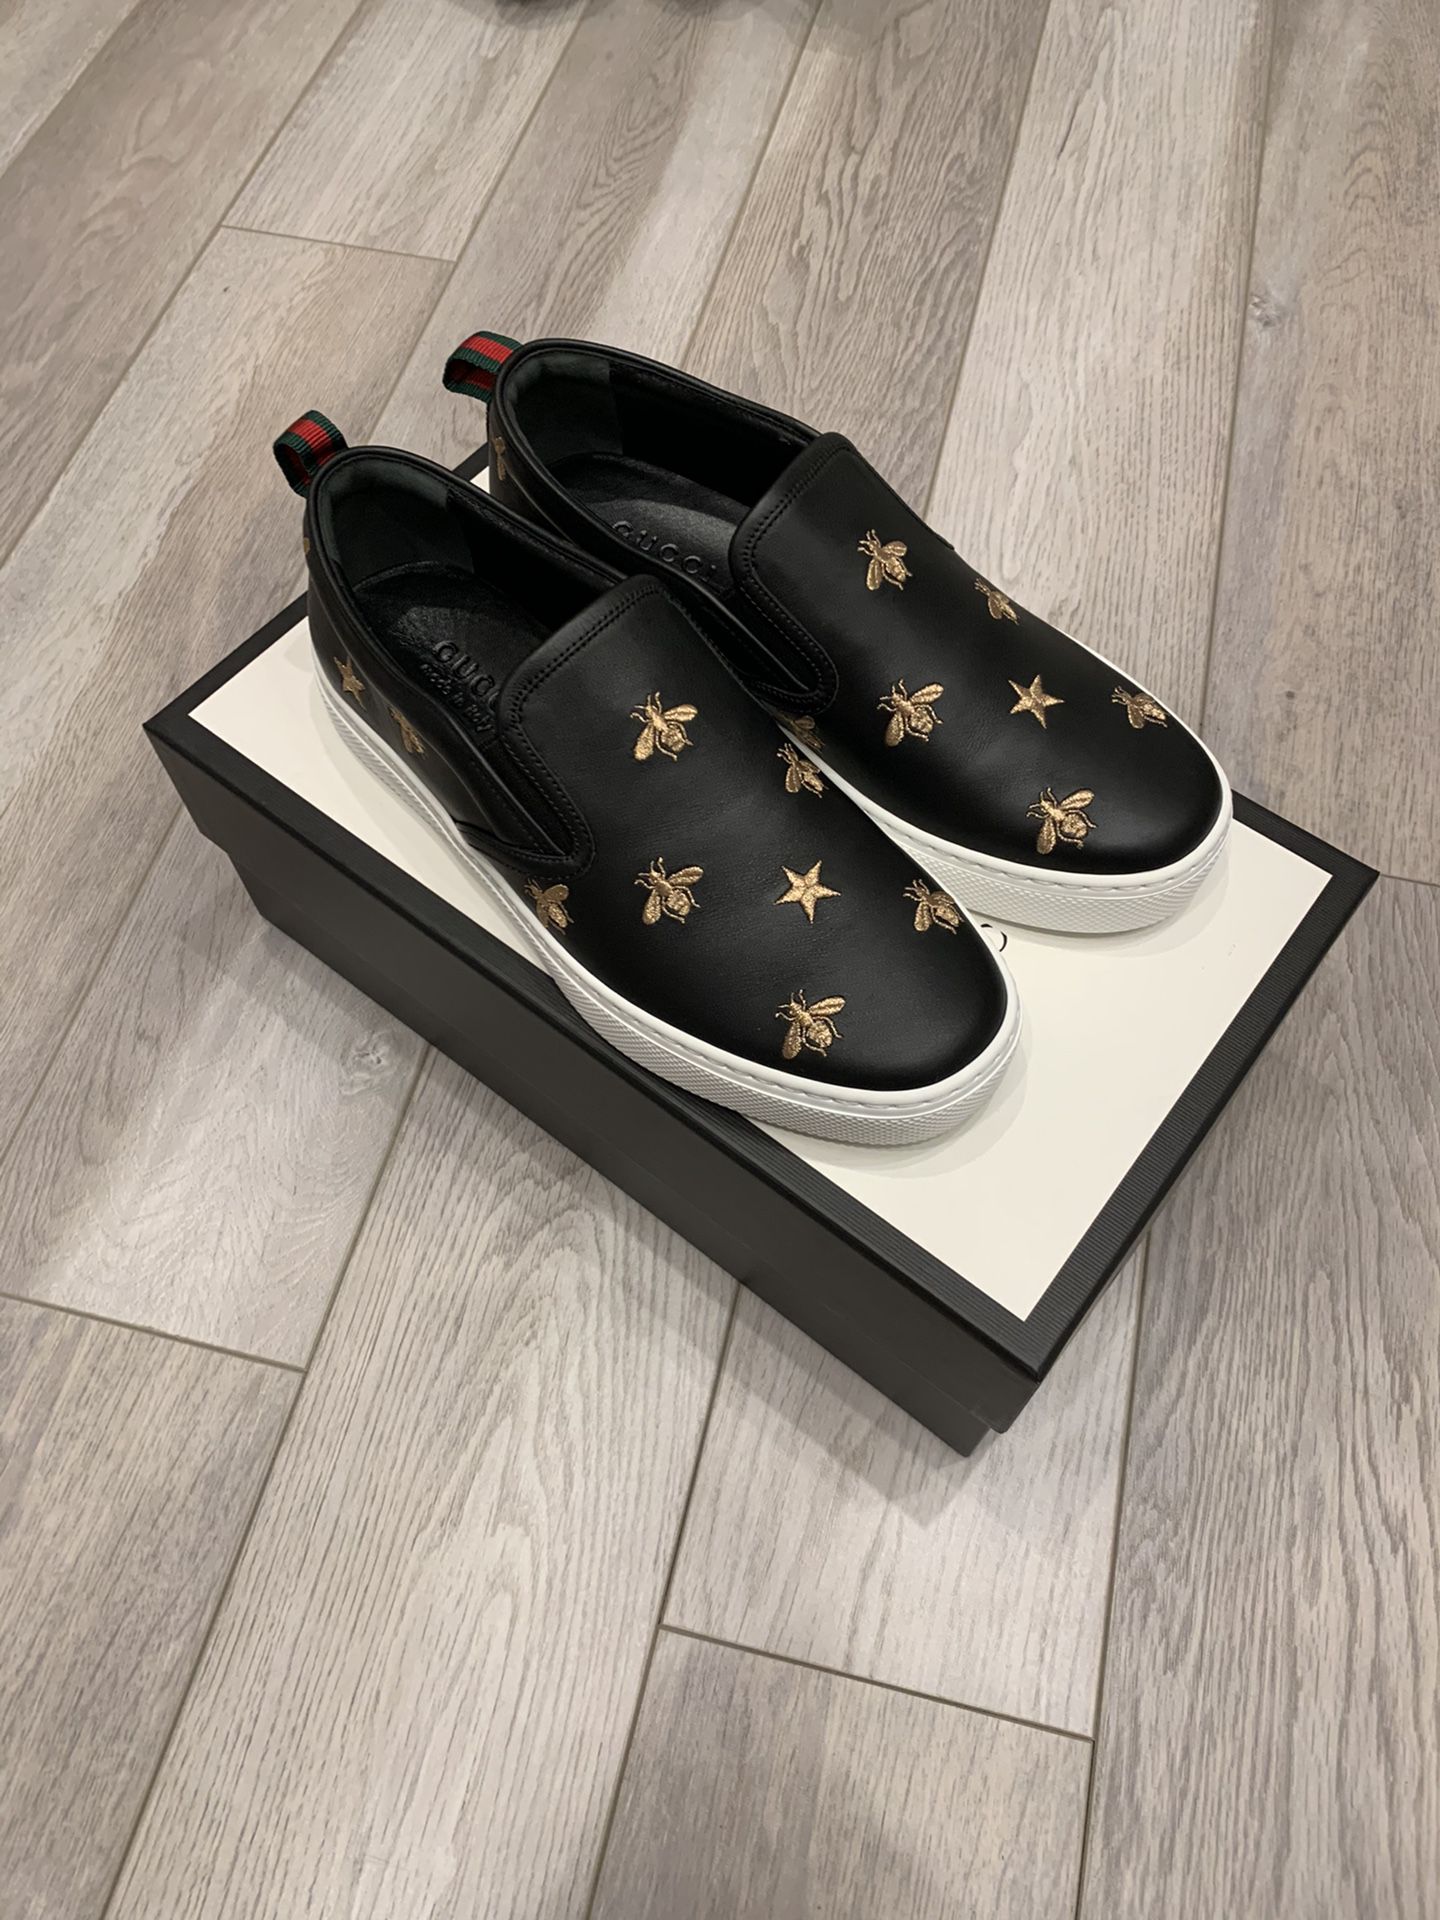 Men’s Gucci Dublin shoes UK 7/US 8 Runs Big